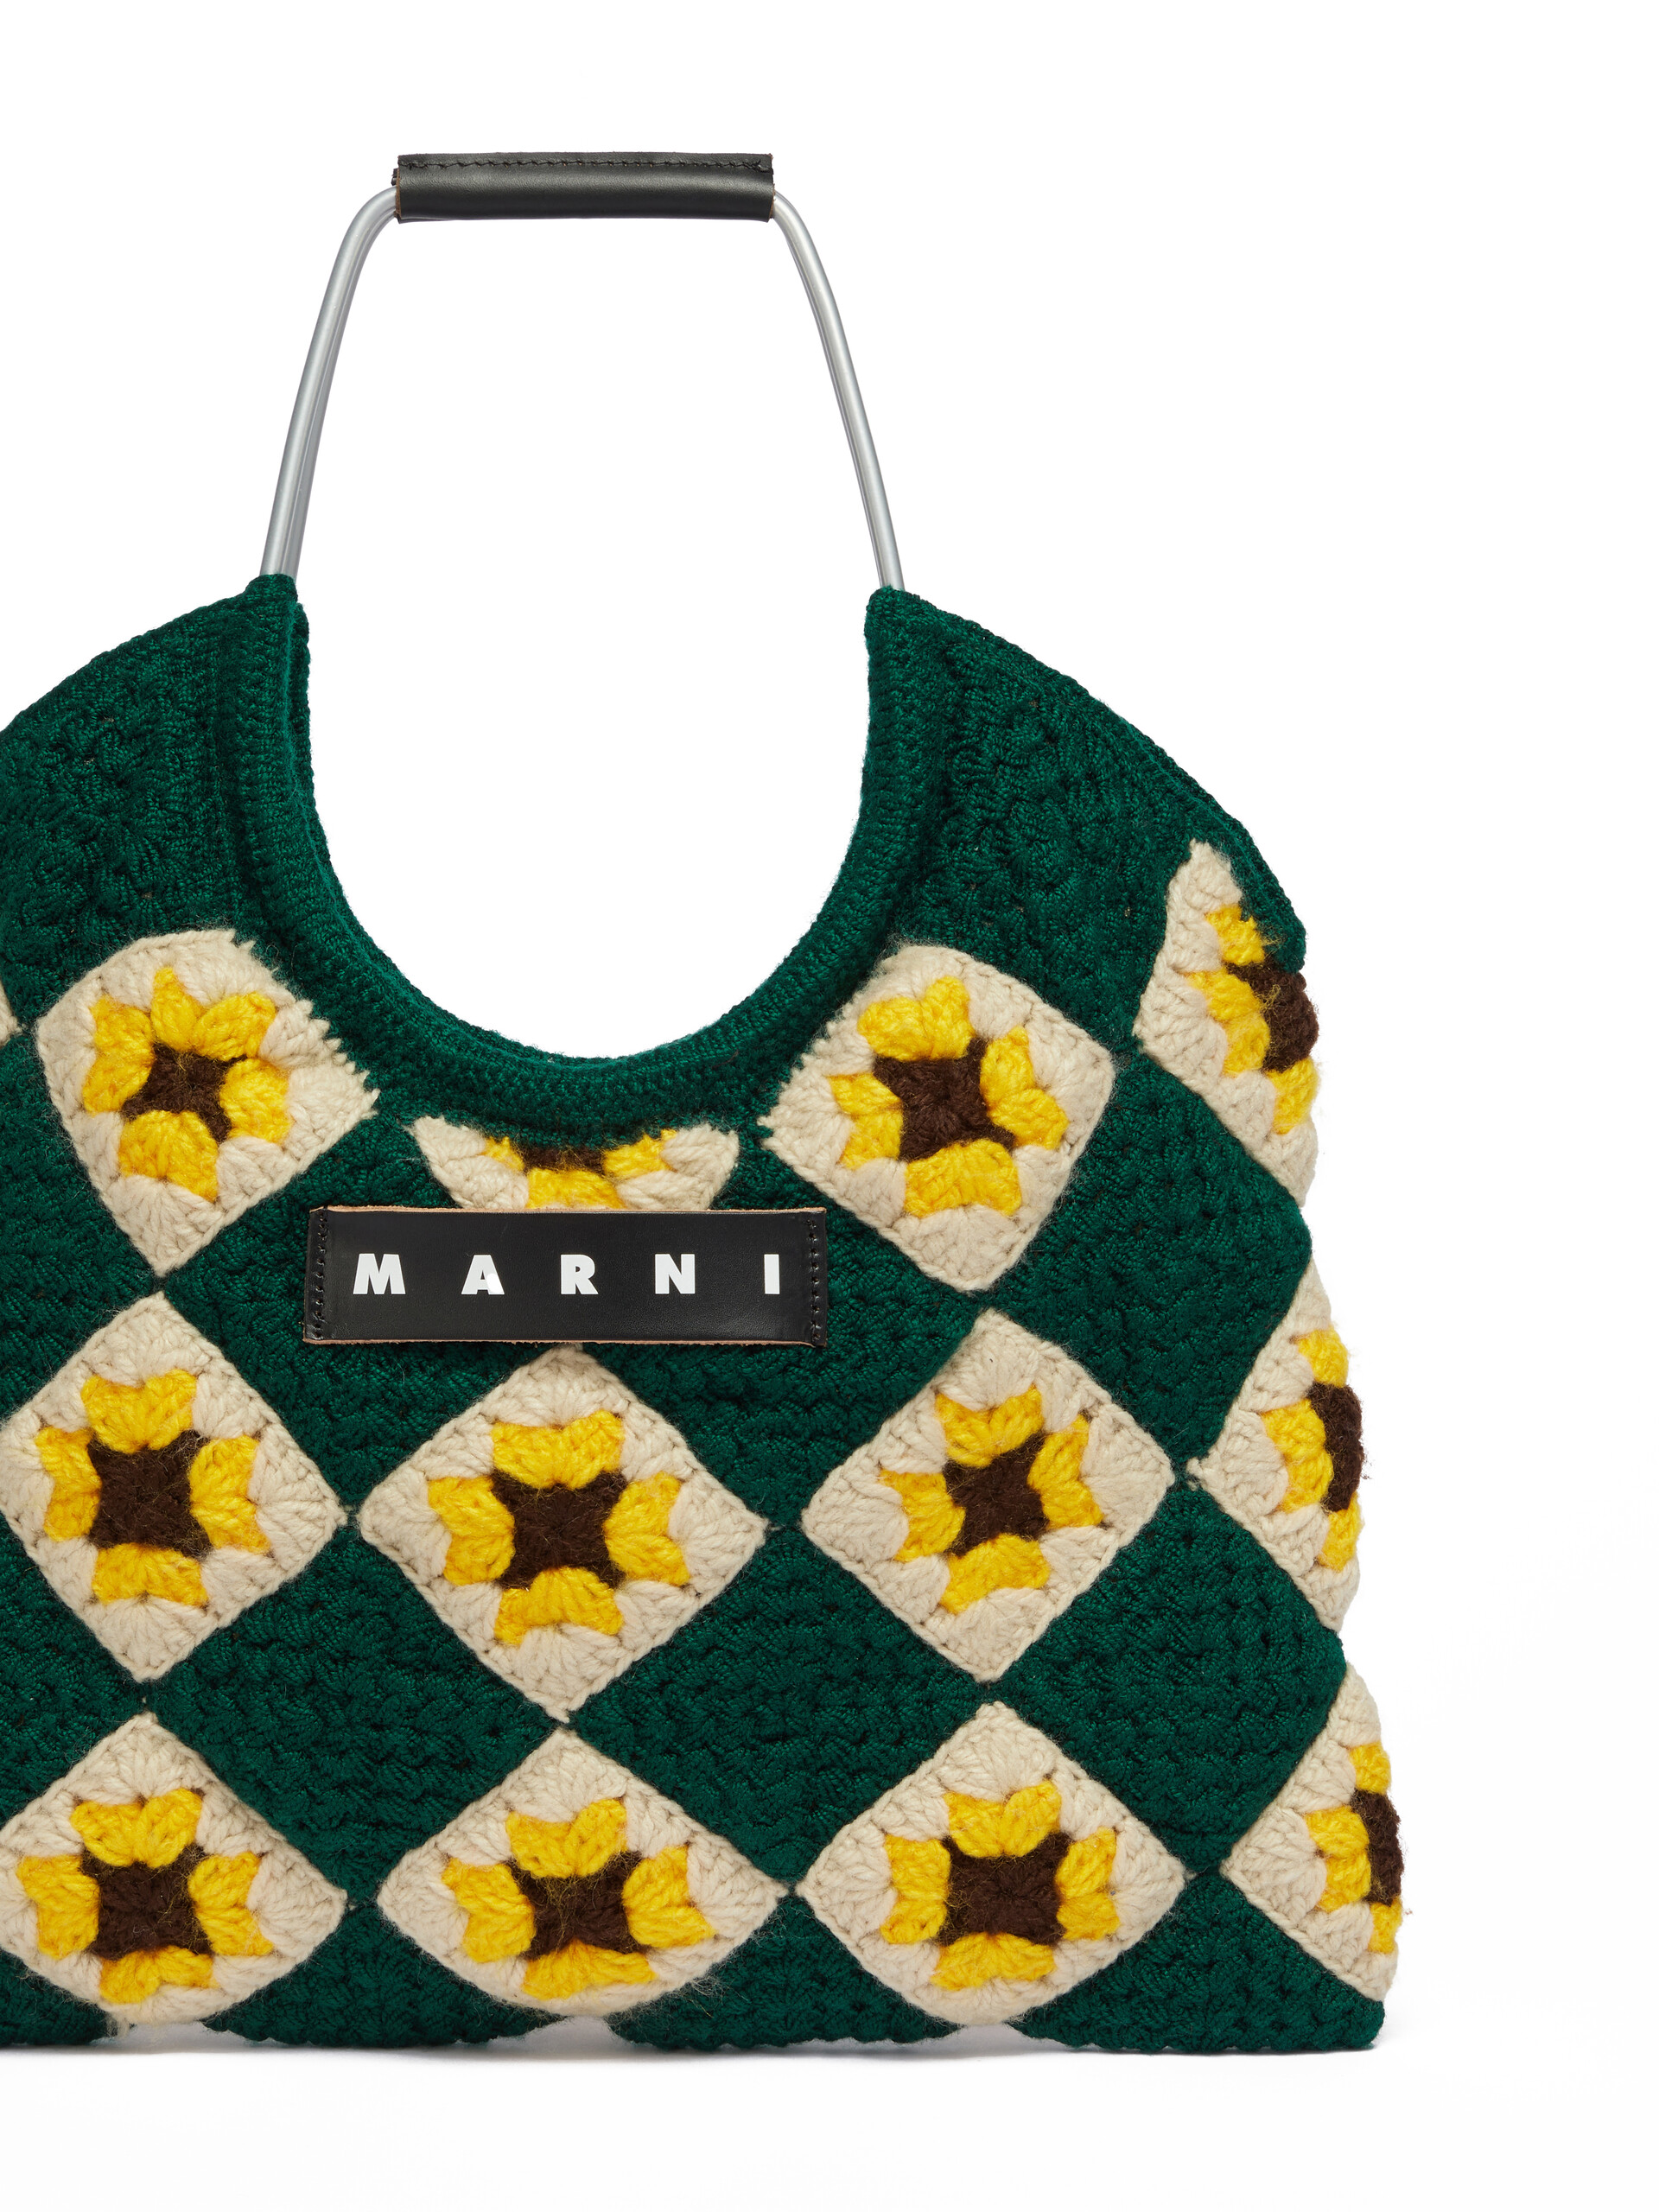 Blue Crochet Marni Market Hedge Bag - Shopping Bags - Image 4